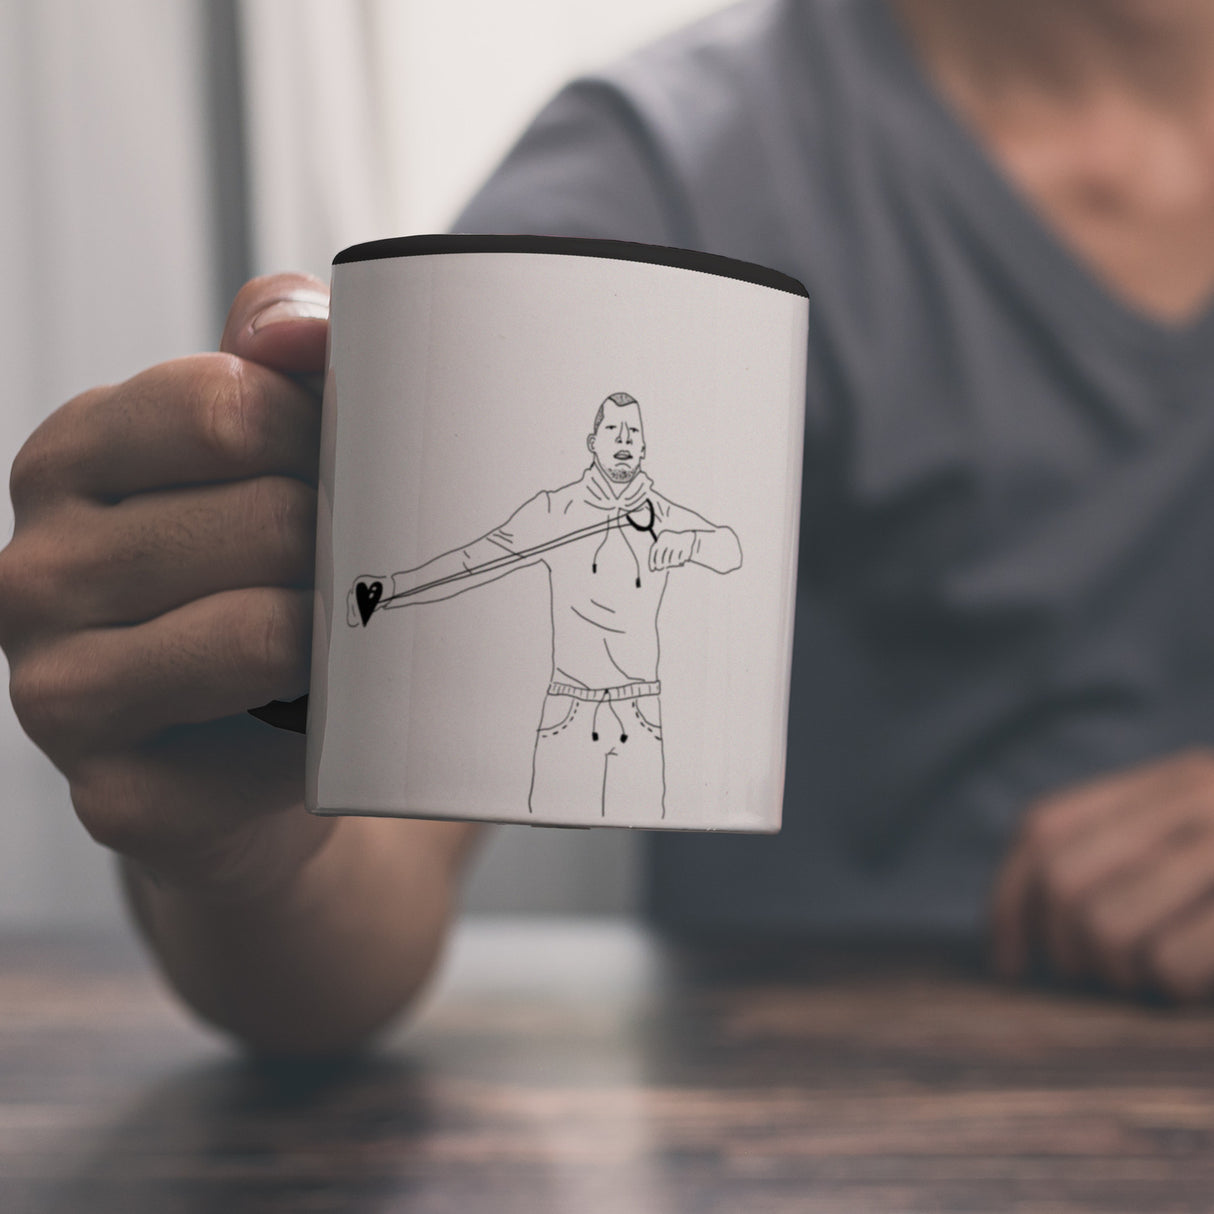 Kaffeebecher mit ironischem Spruch, gezeichnetem Charakter und Steinschleuder